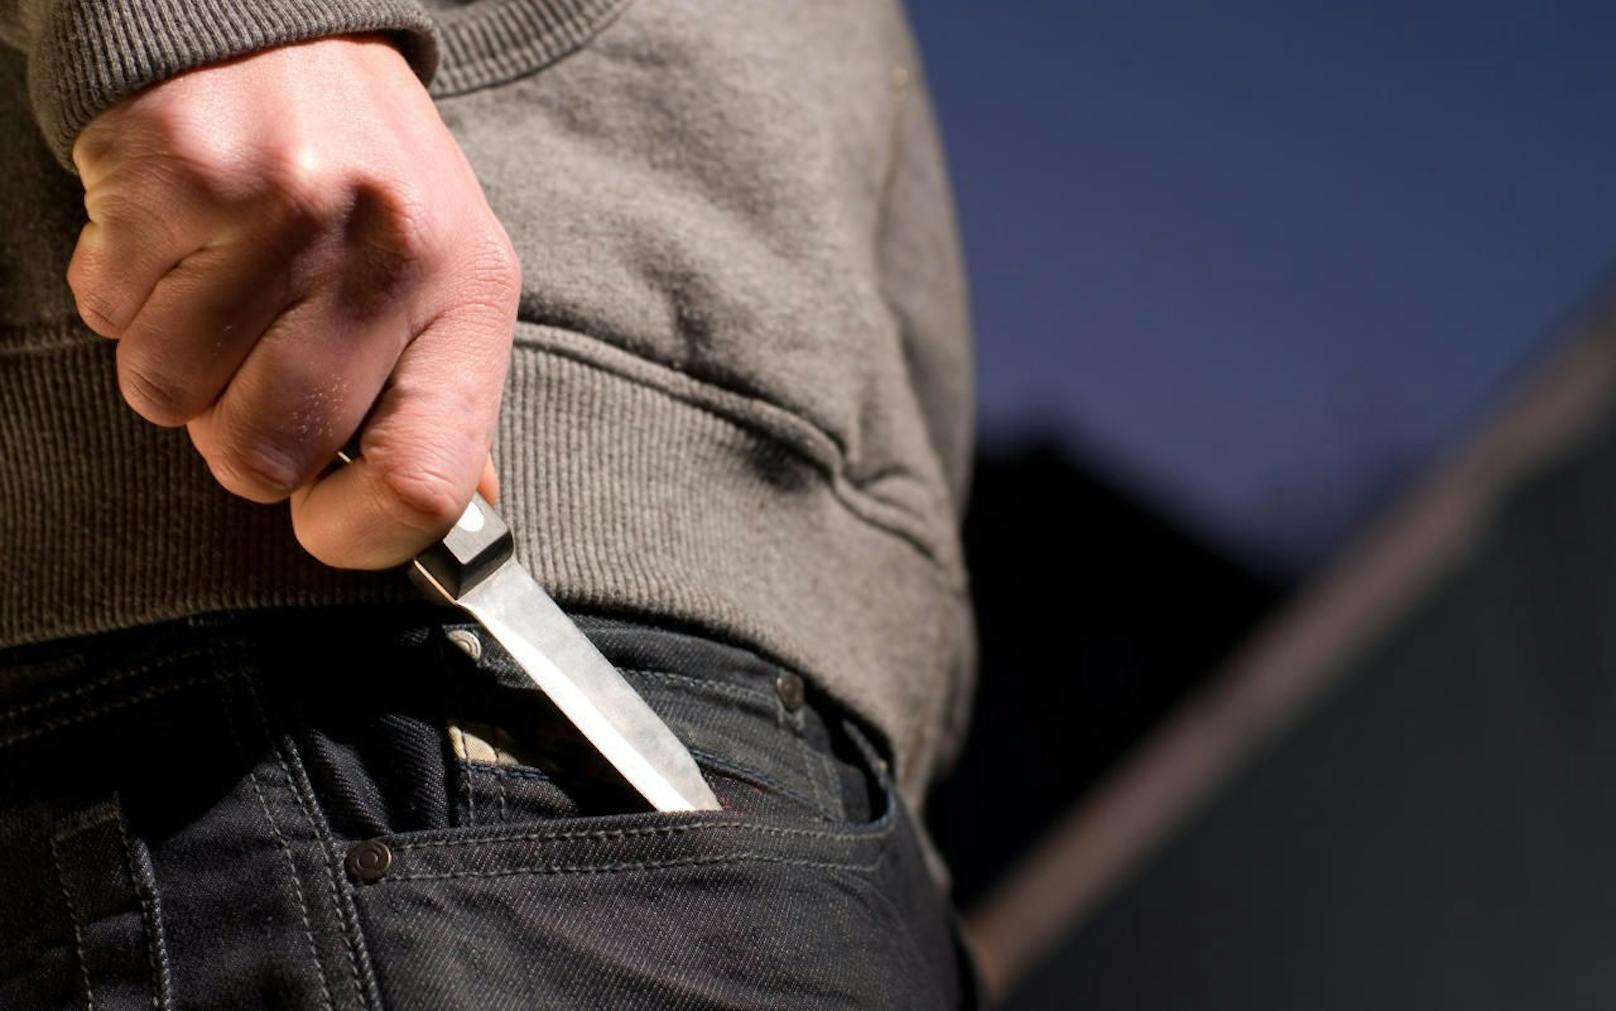 Ein 53-Jähriger soll seine Ehefrau mit dem Messer bedroht haben